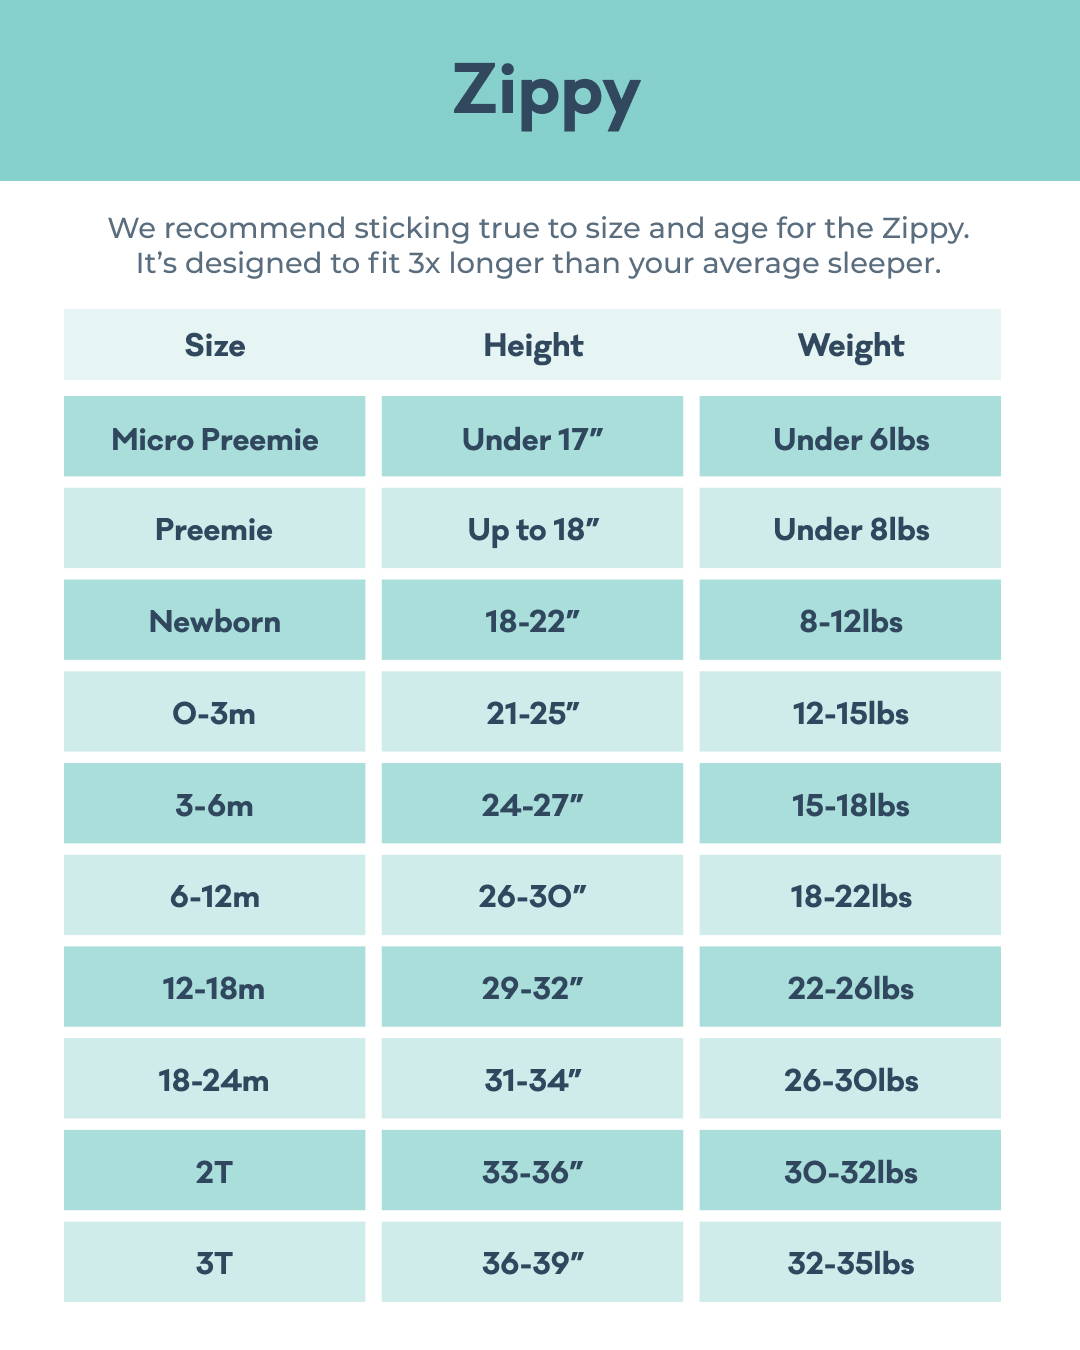 Zippy Size Chart: size Micropreemie fits children under 6lbs and under 17in; size Preemie fits children under 8lbs and up to 18in tall; size Newborn fits 8-12lbs and 18-22in; size 0-3m fits 12-15 lbs and 21-25in; size 3-6m fits 15-18lbs and 24-27in; size 6-12m fits 18-22lbs and 26-30in; size 12-18m fits 22-26lbs and 29-32in; size 18-24m fits 26-30lbs and 31-34in; size 2T fits 30-32lbs and 33-36in; size 3T fits 32-35lbs and 36-39in